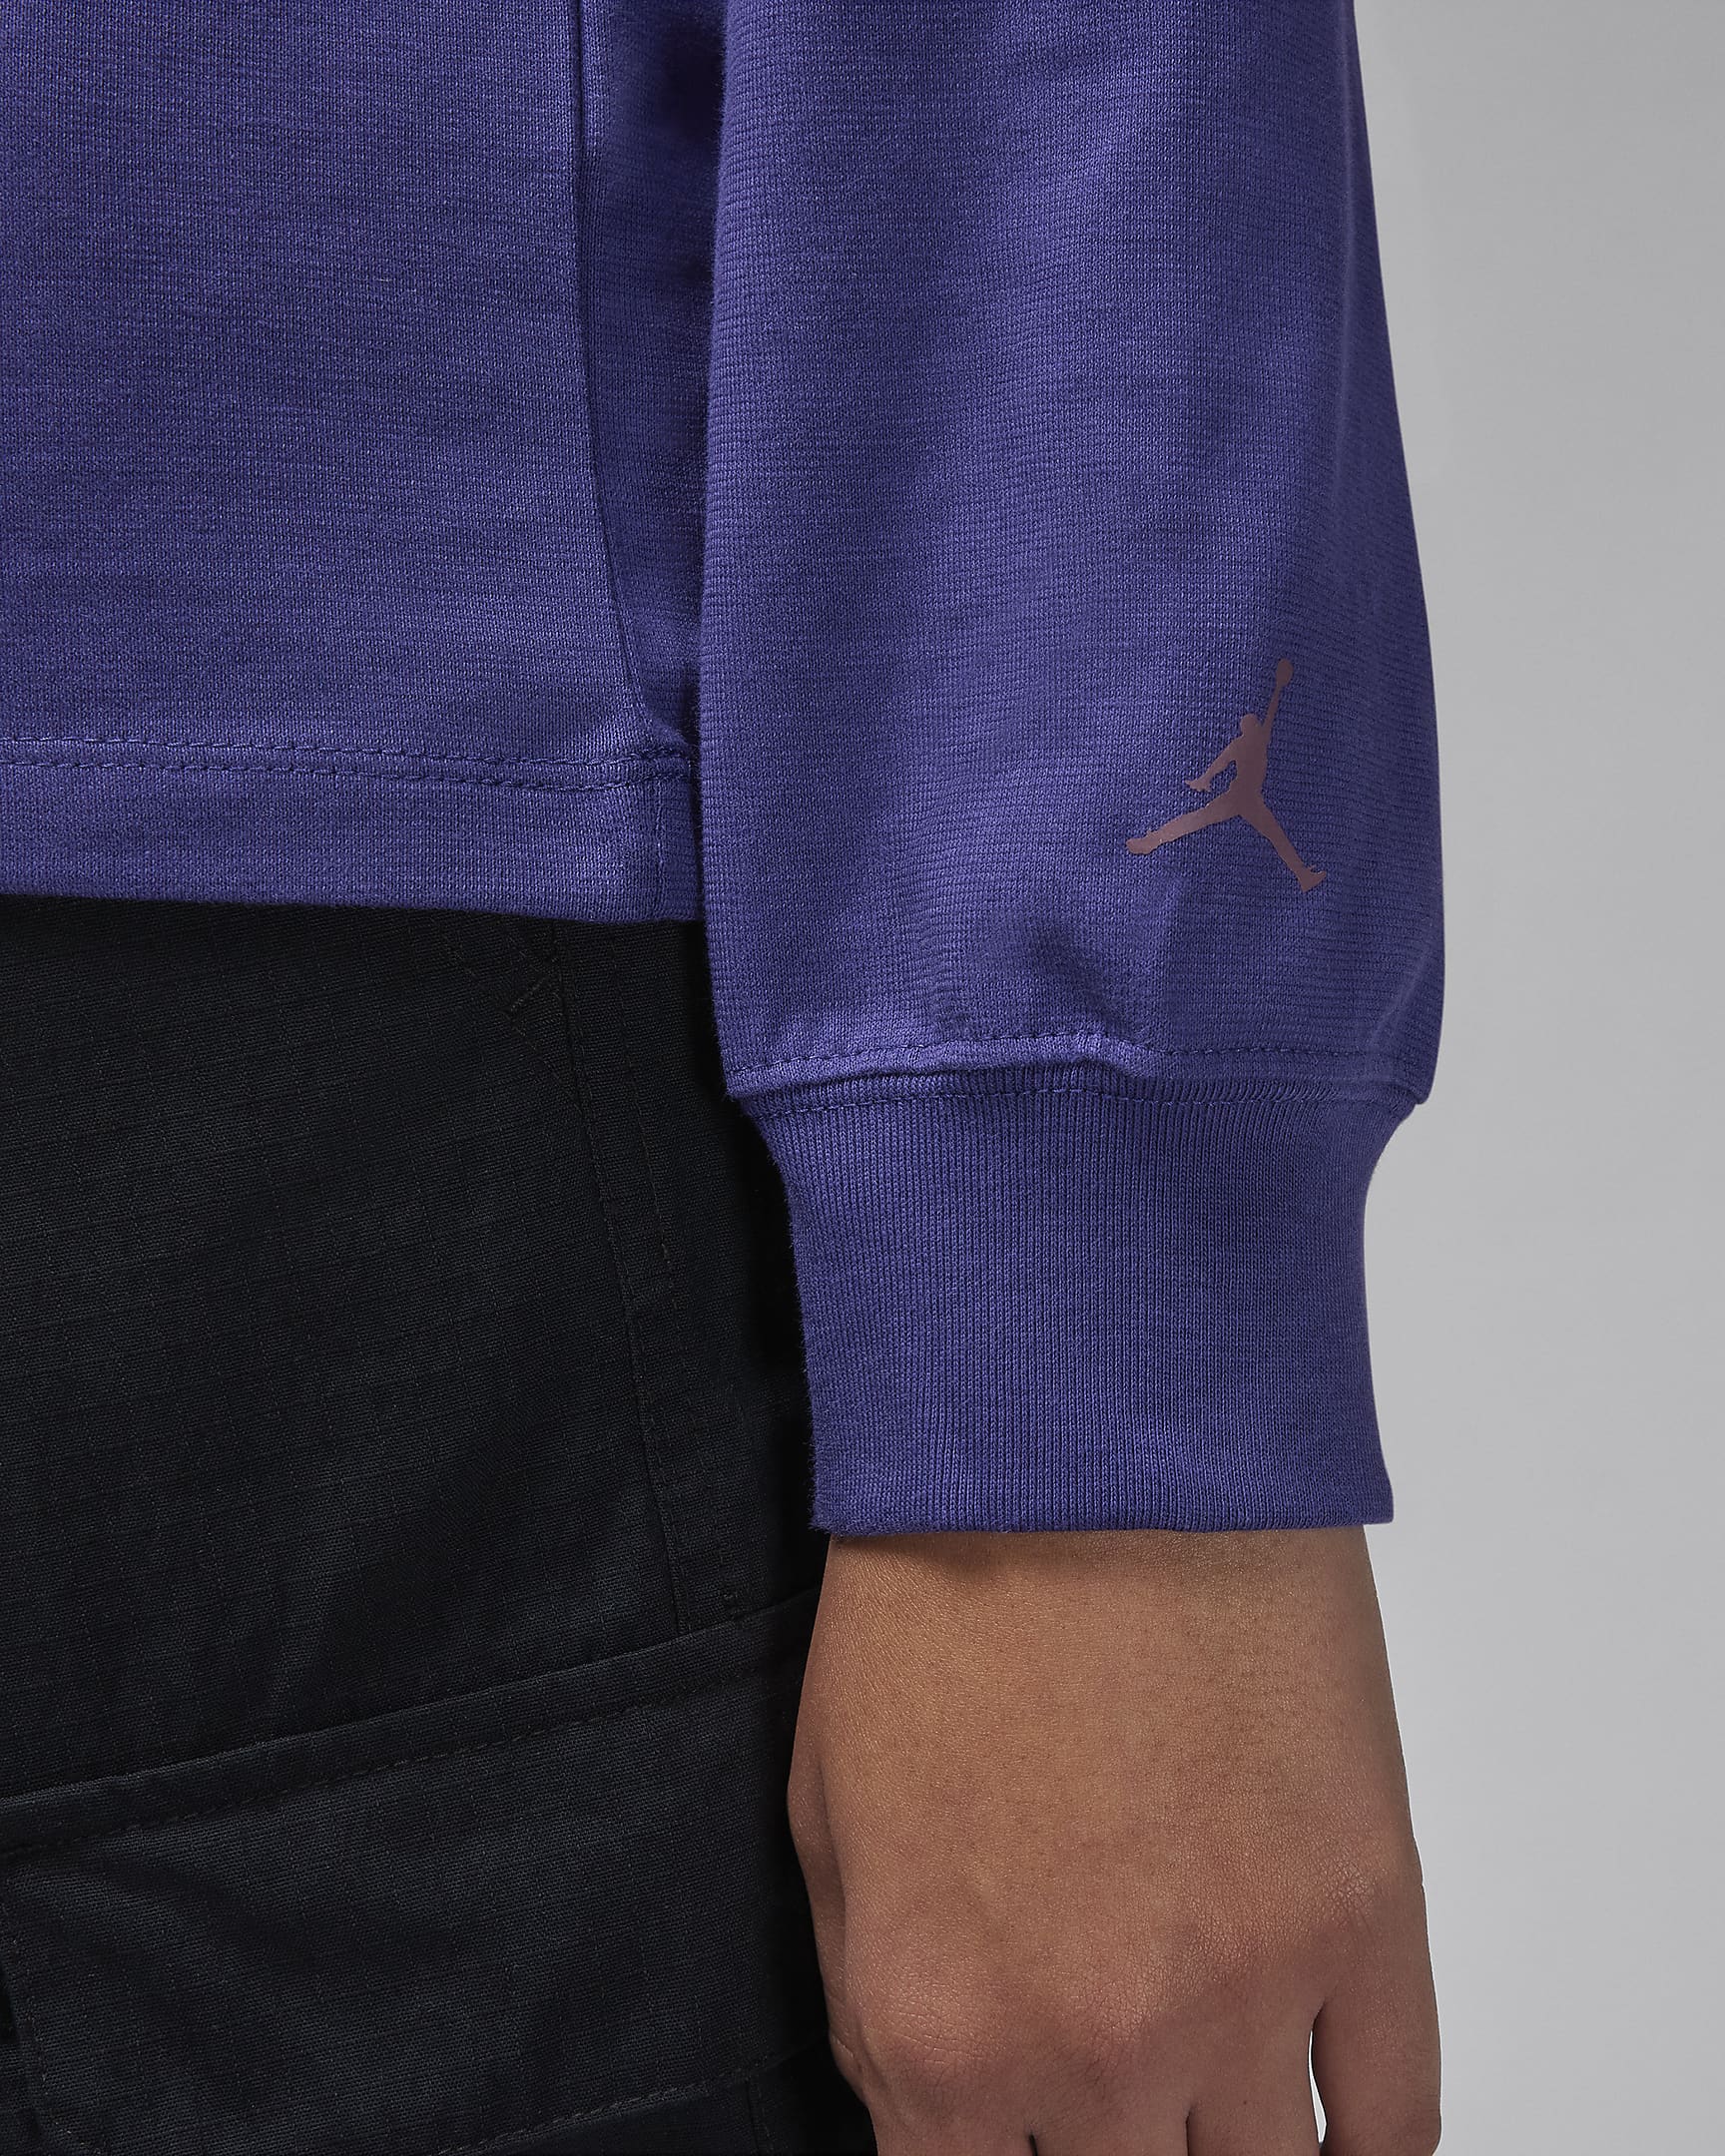 Jordan Women's Long-Sleeve Graphic T-Shirt. Nike.com